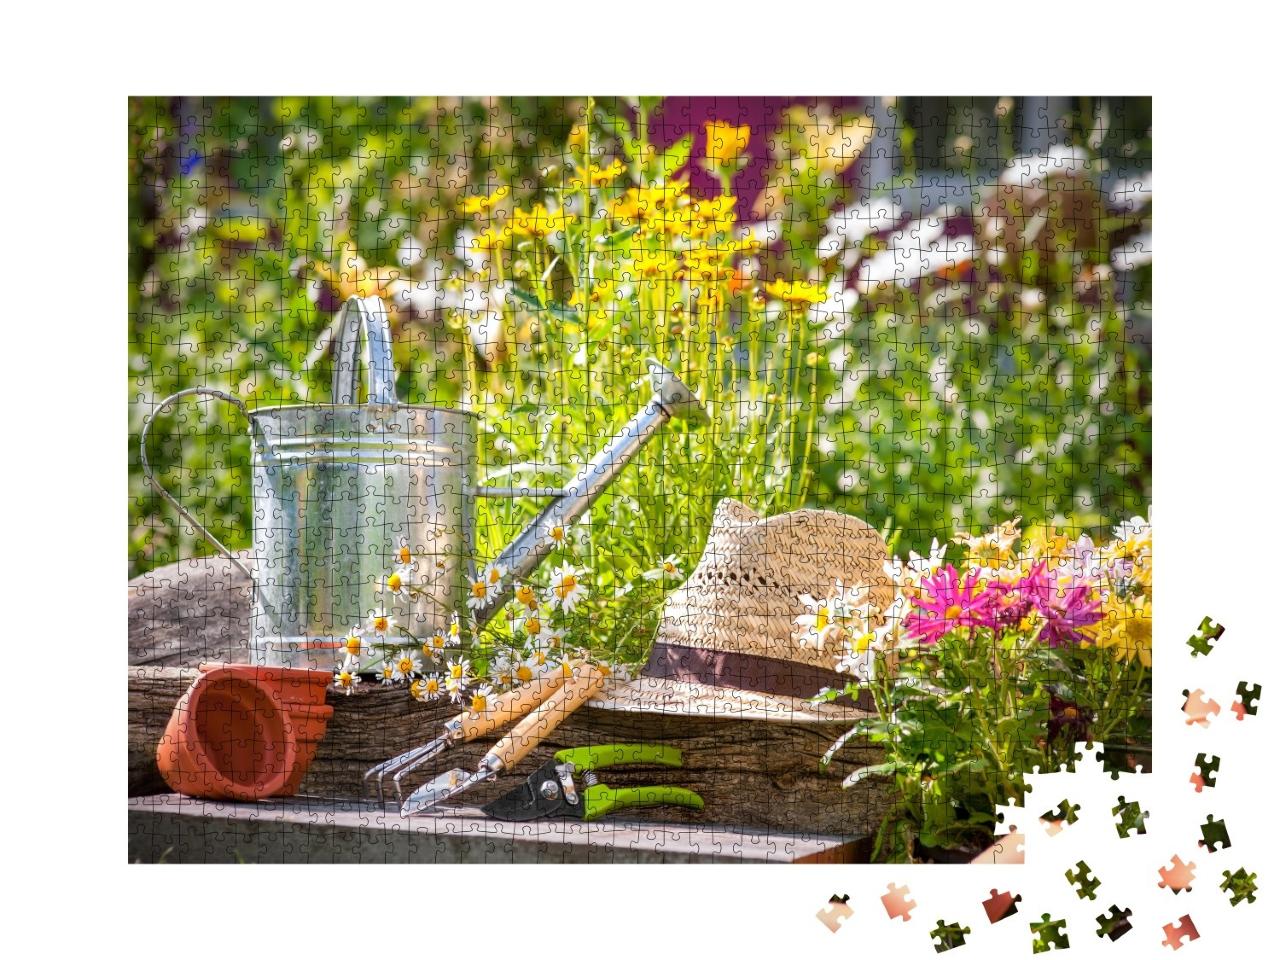 Puzzle de 1000 pièces « Outils de jardinage et chapeau de paille dans le jardin »